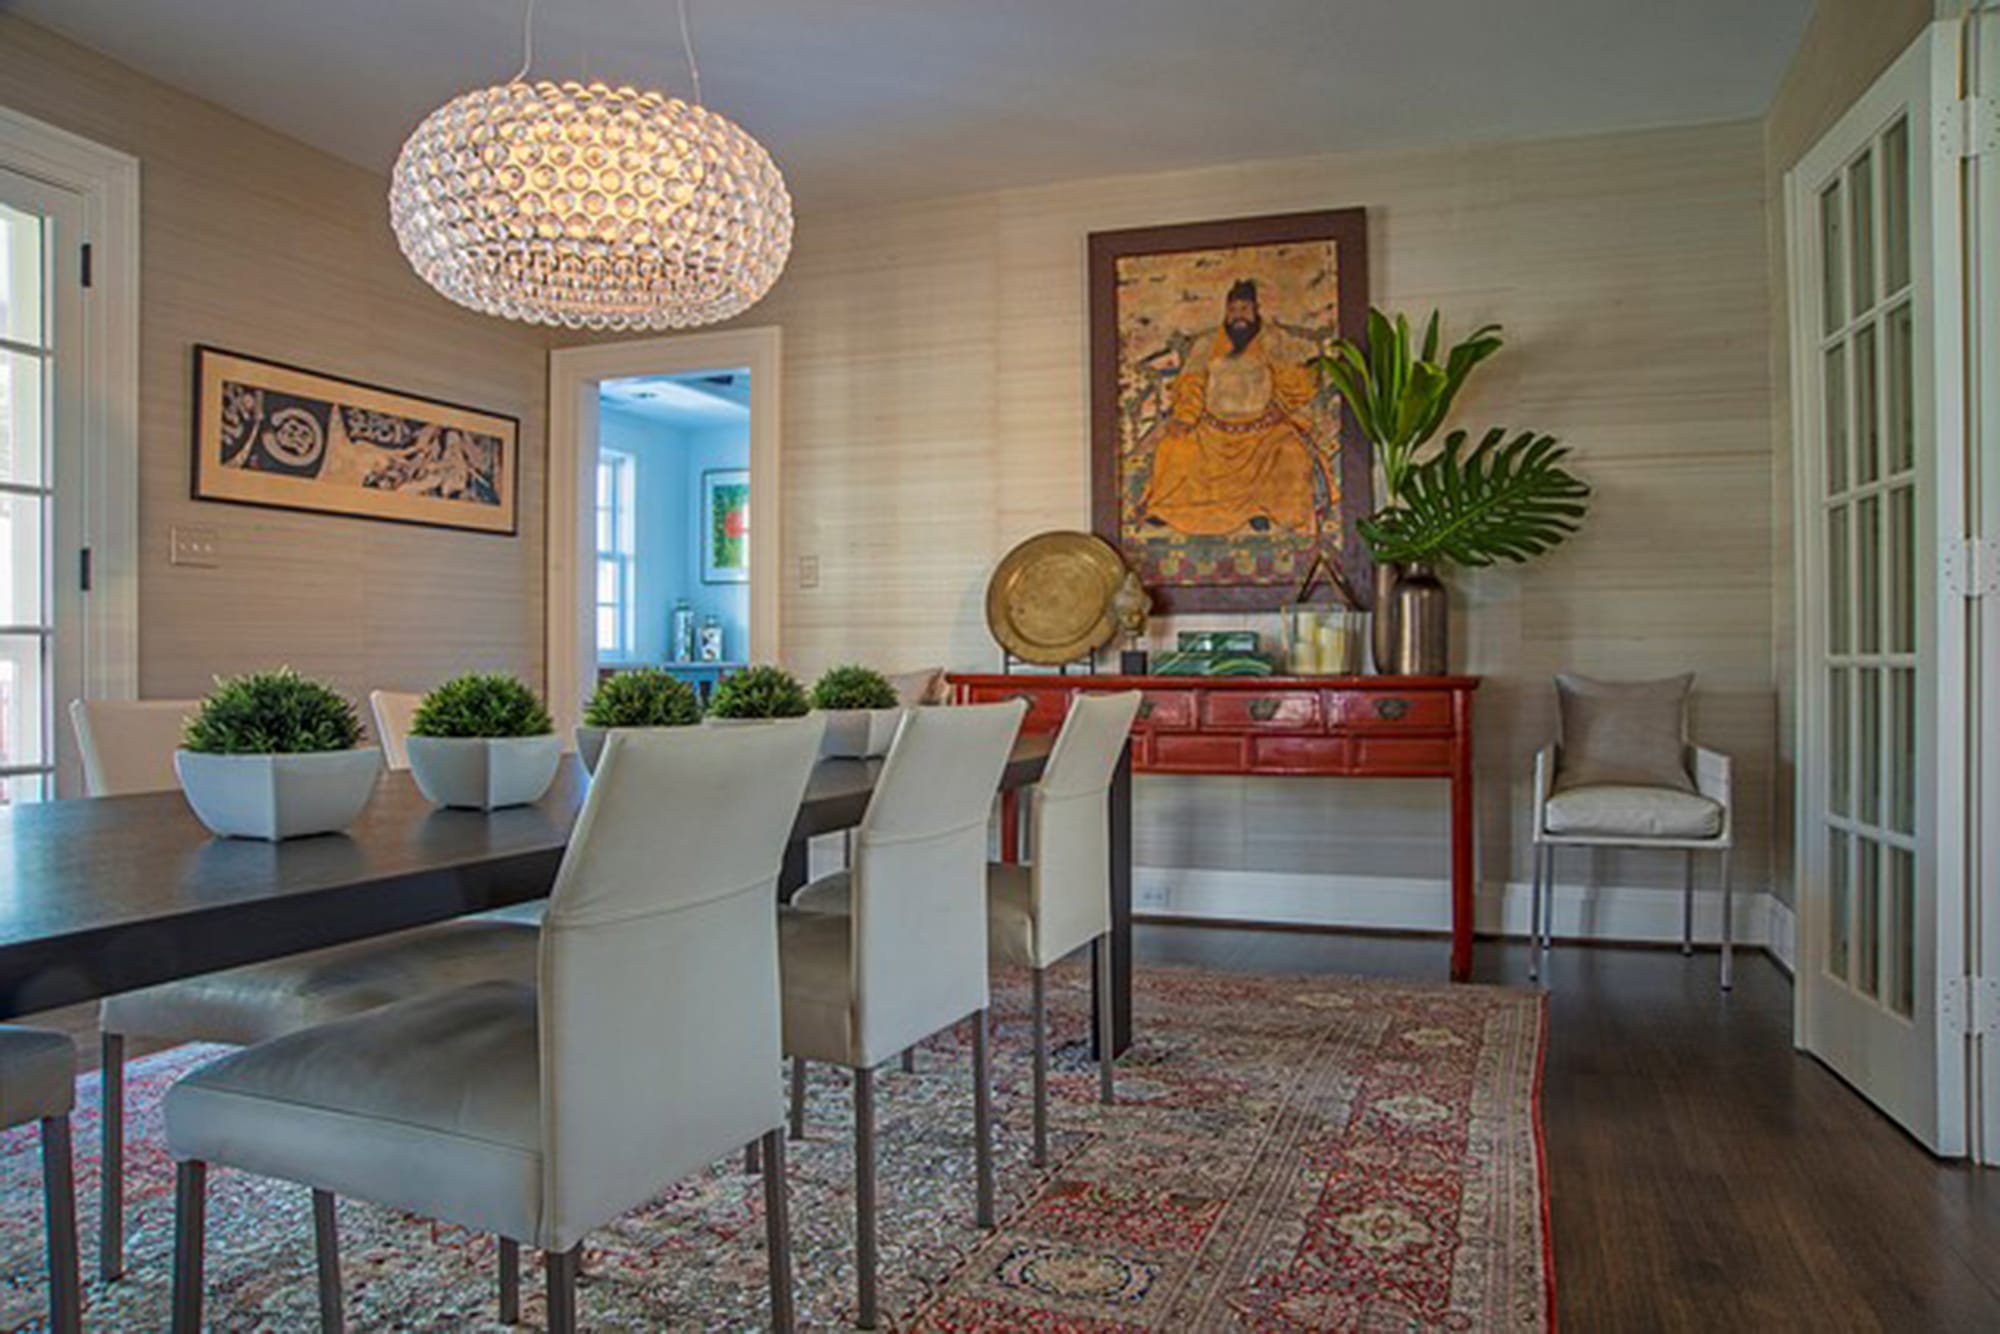 A silk rug in a Washington dining room designed by Annie Elliott. (Michael K.